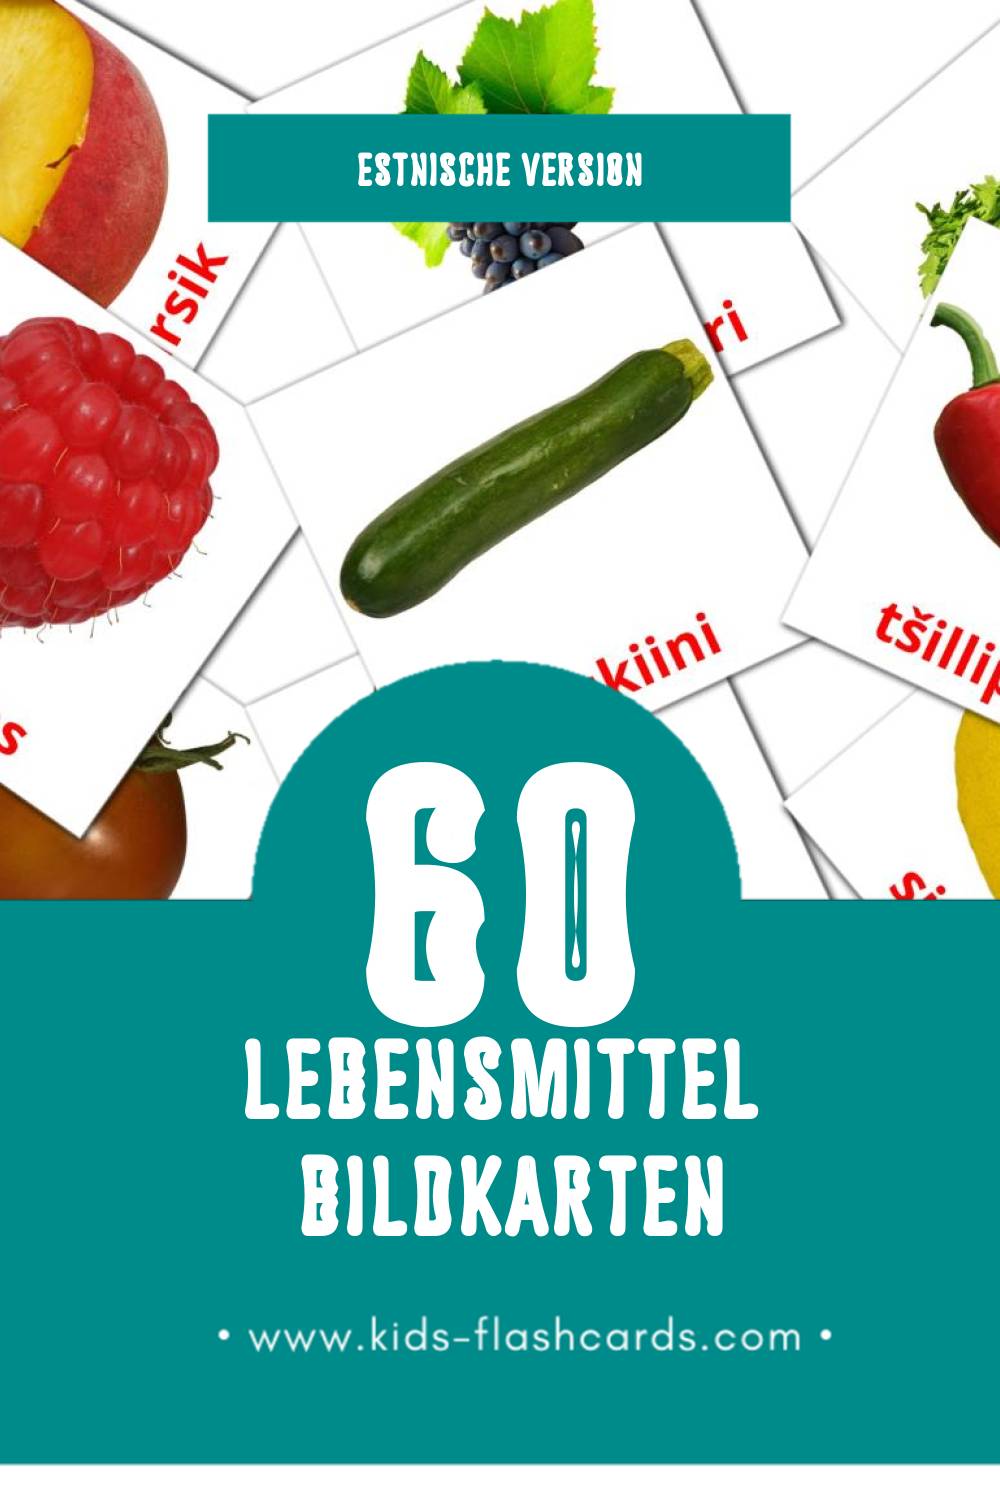 Visual Toit Flashcards für Kleinkinder (60 Karten in Estnisch)